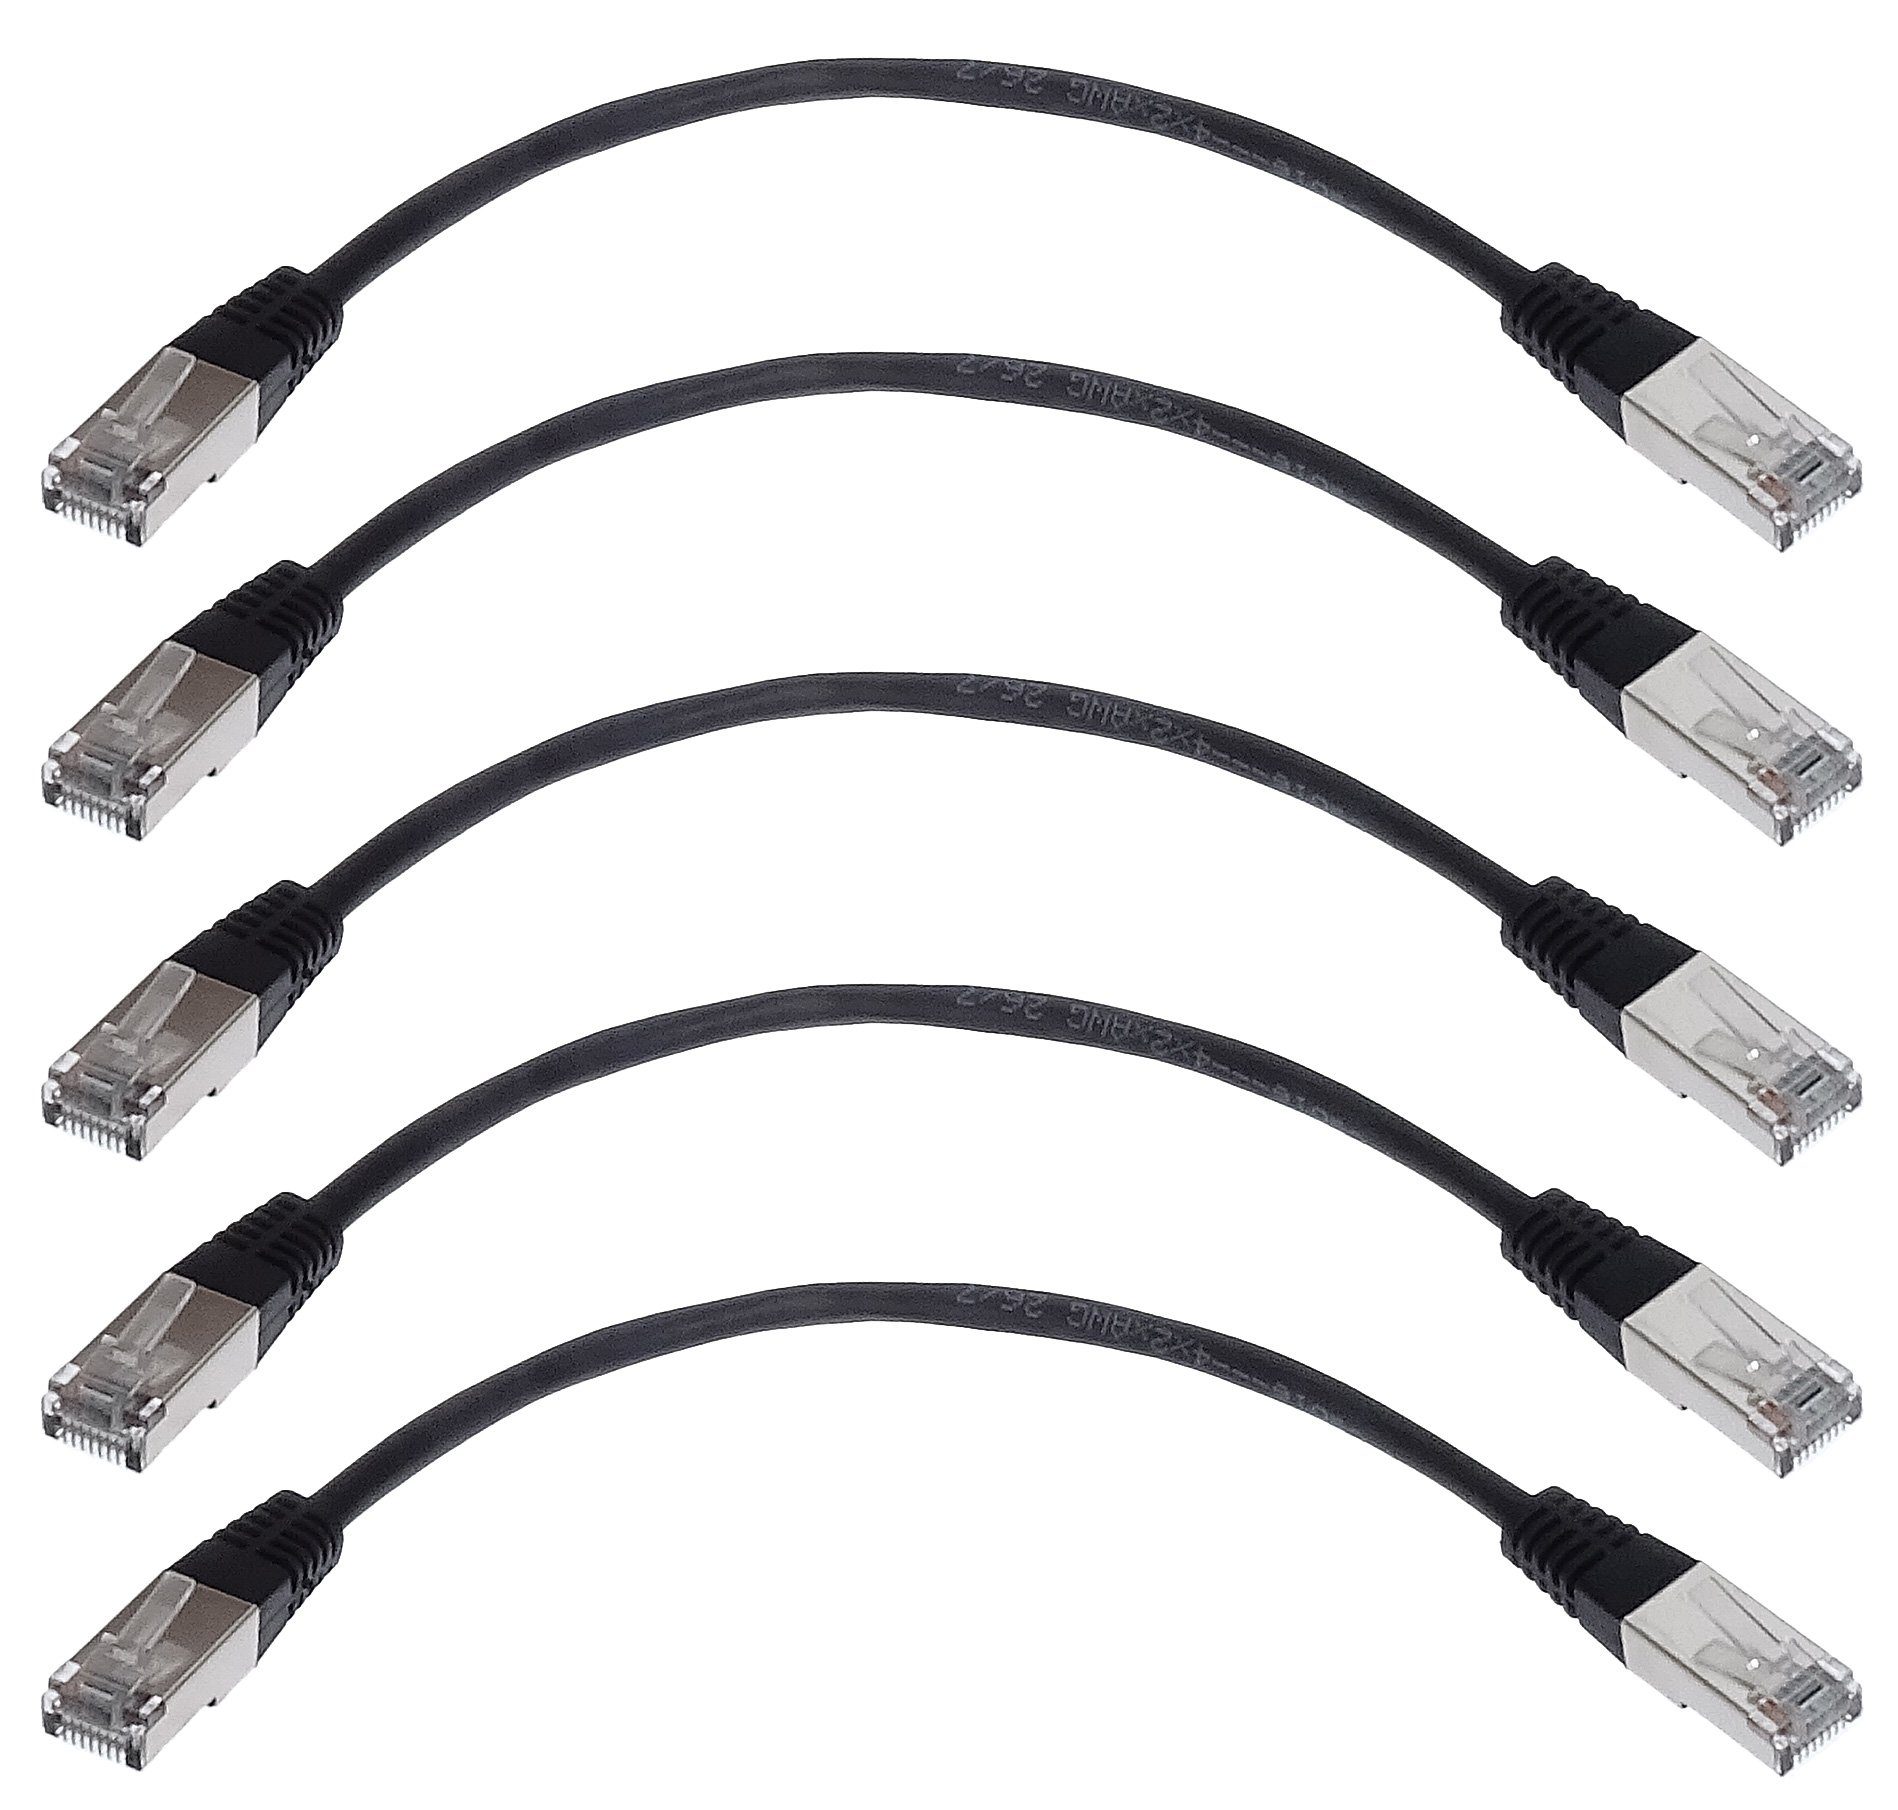 shortix kurzes LAN-/Patch-Kabel (2x RJ45 Stecker). Cat.5e. 25cm. 5/10 Stück. LAN-Kabel, RJ-45 (Ethernet), RJ-45 (Ethernet), kurz, schwarz, Farbmix